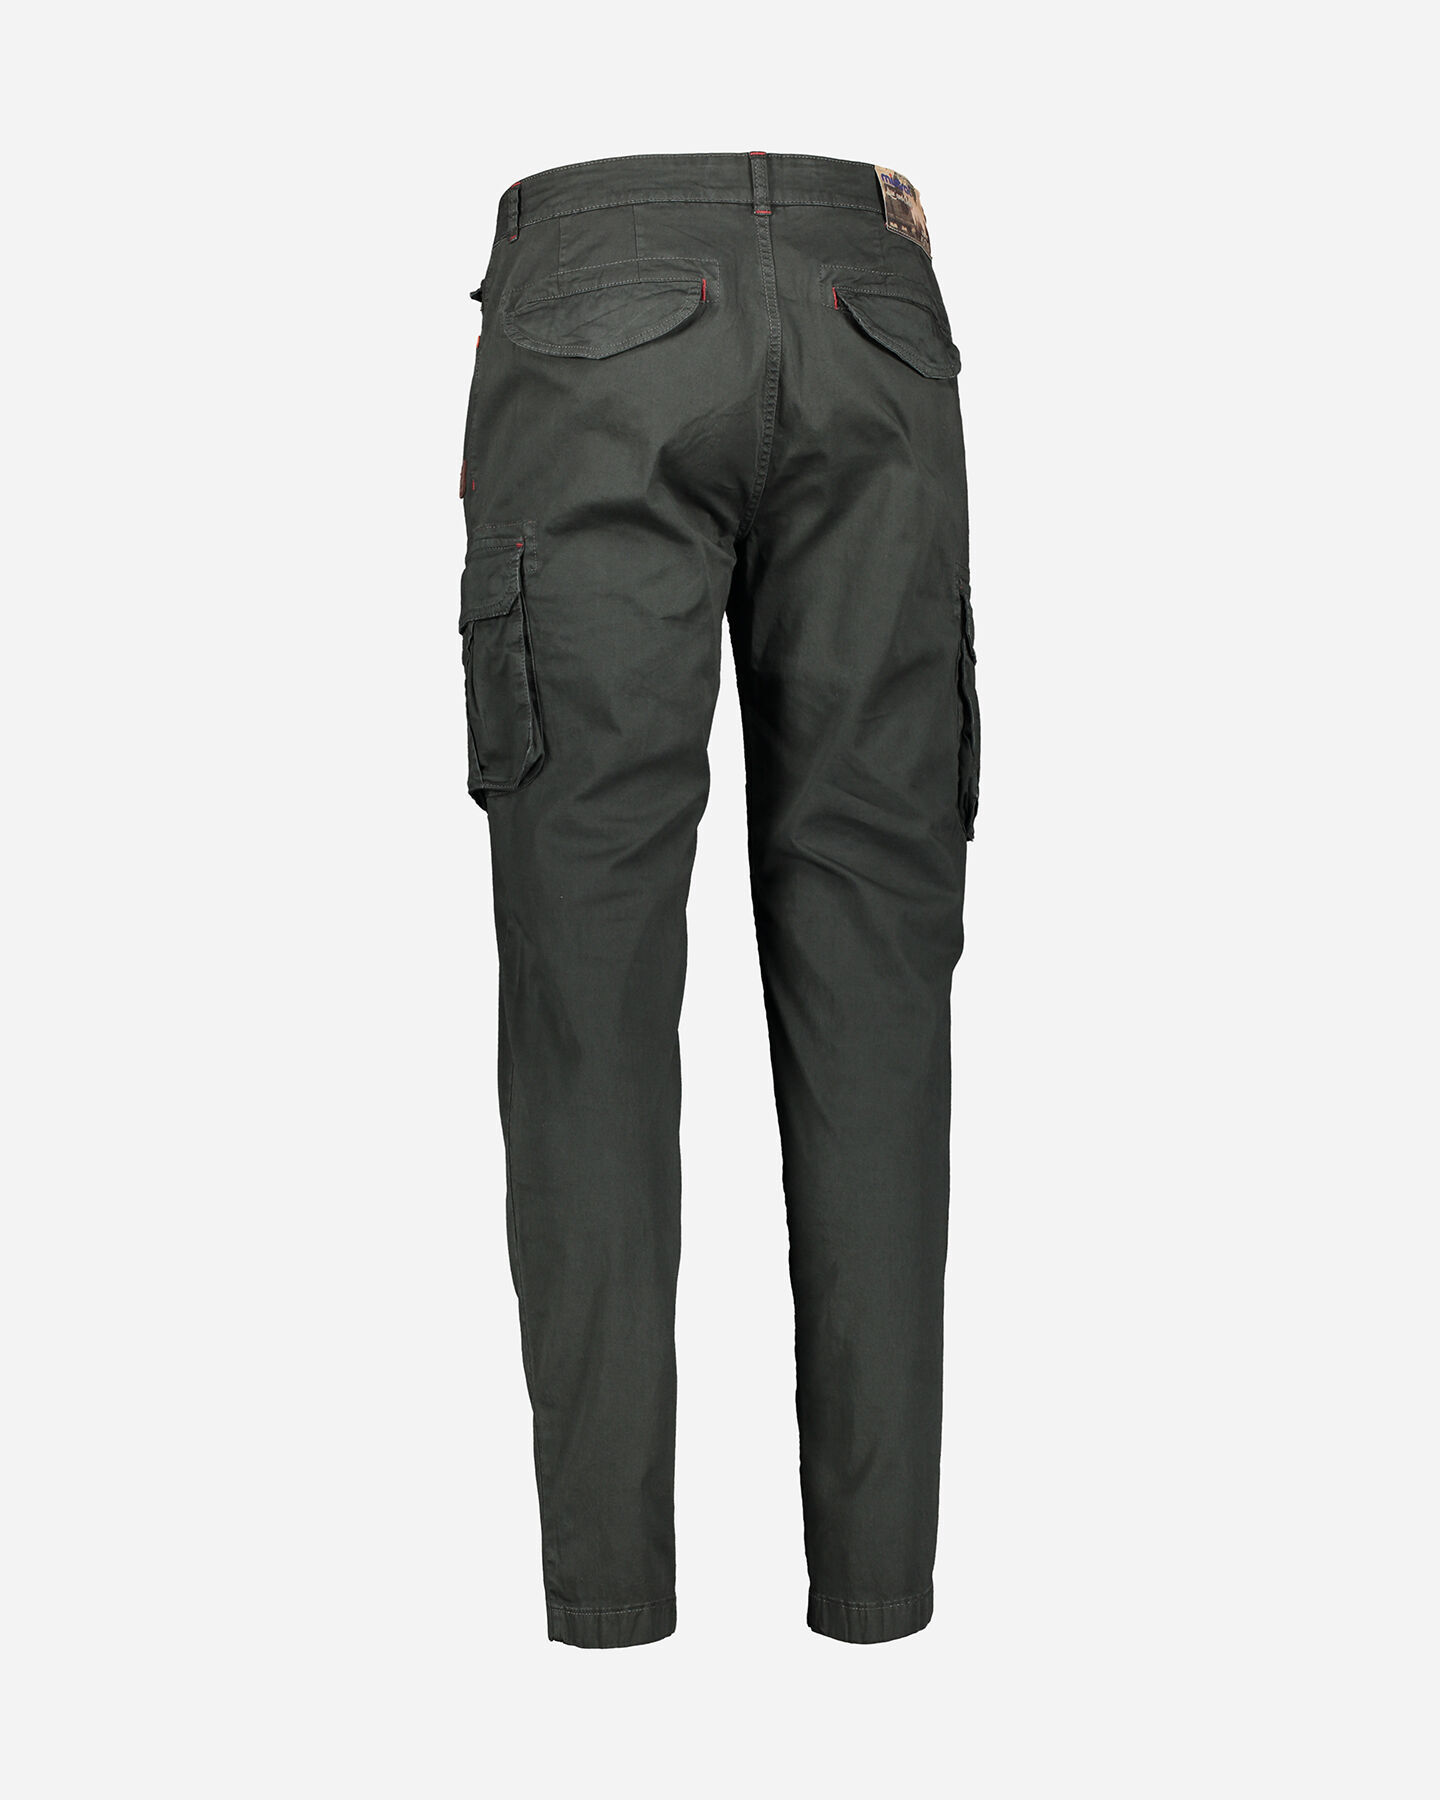  Pantalone MISTRAL TASCONATO M S4087950|910|46 scatto 5